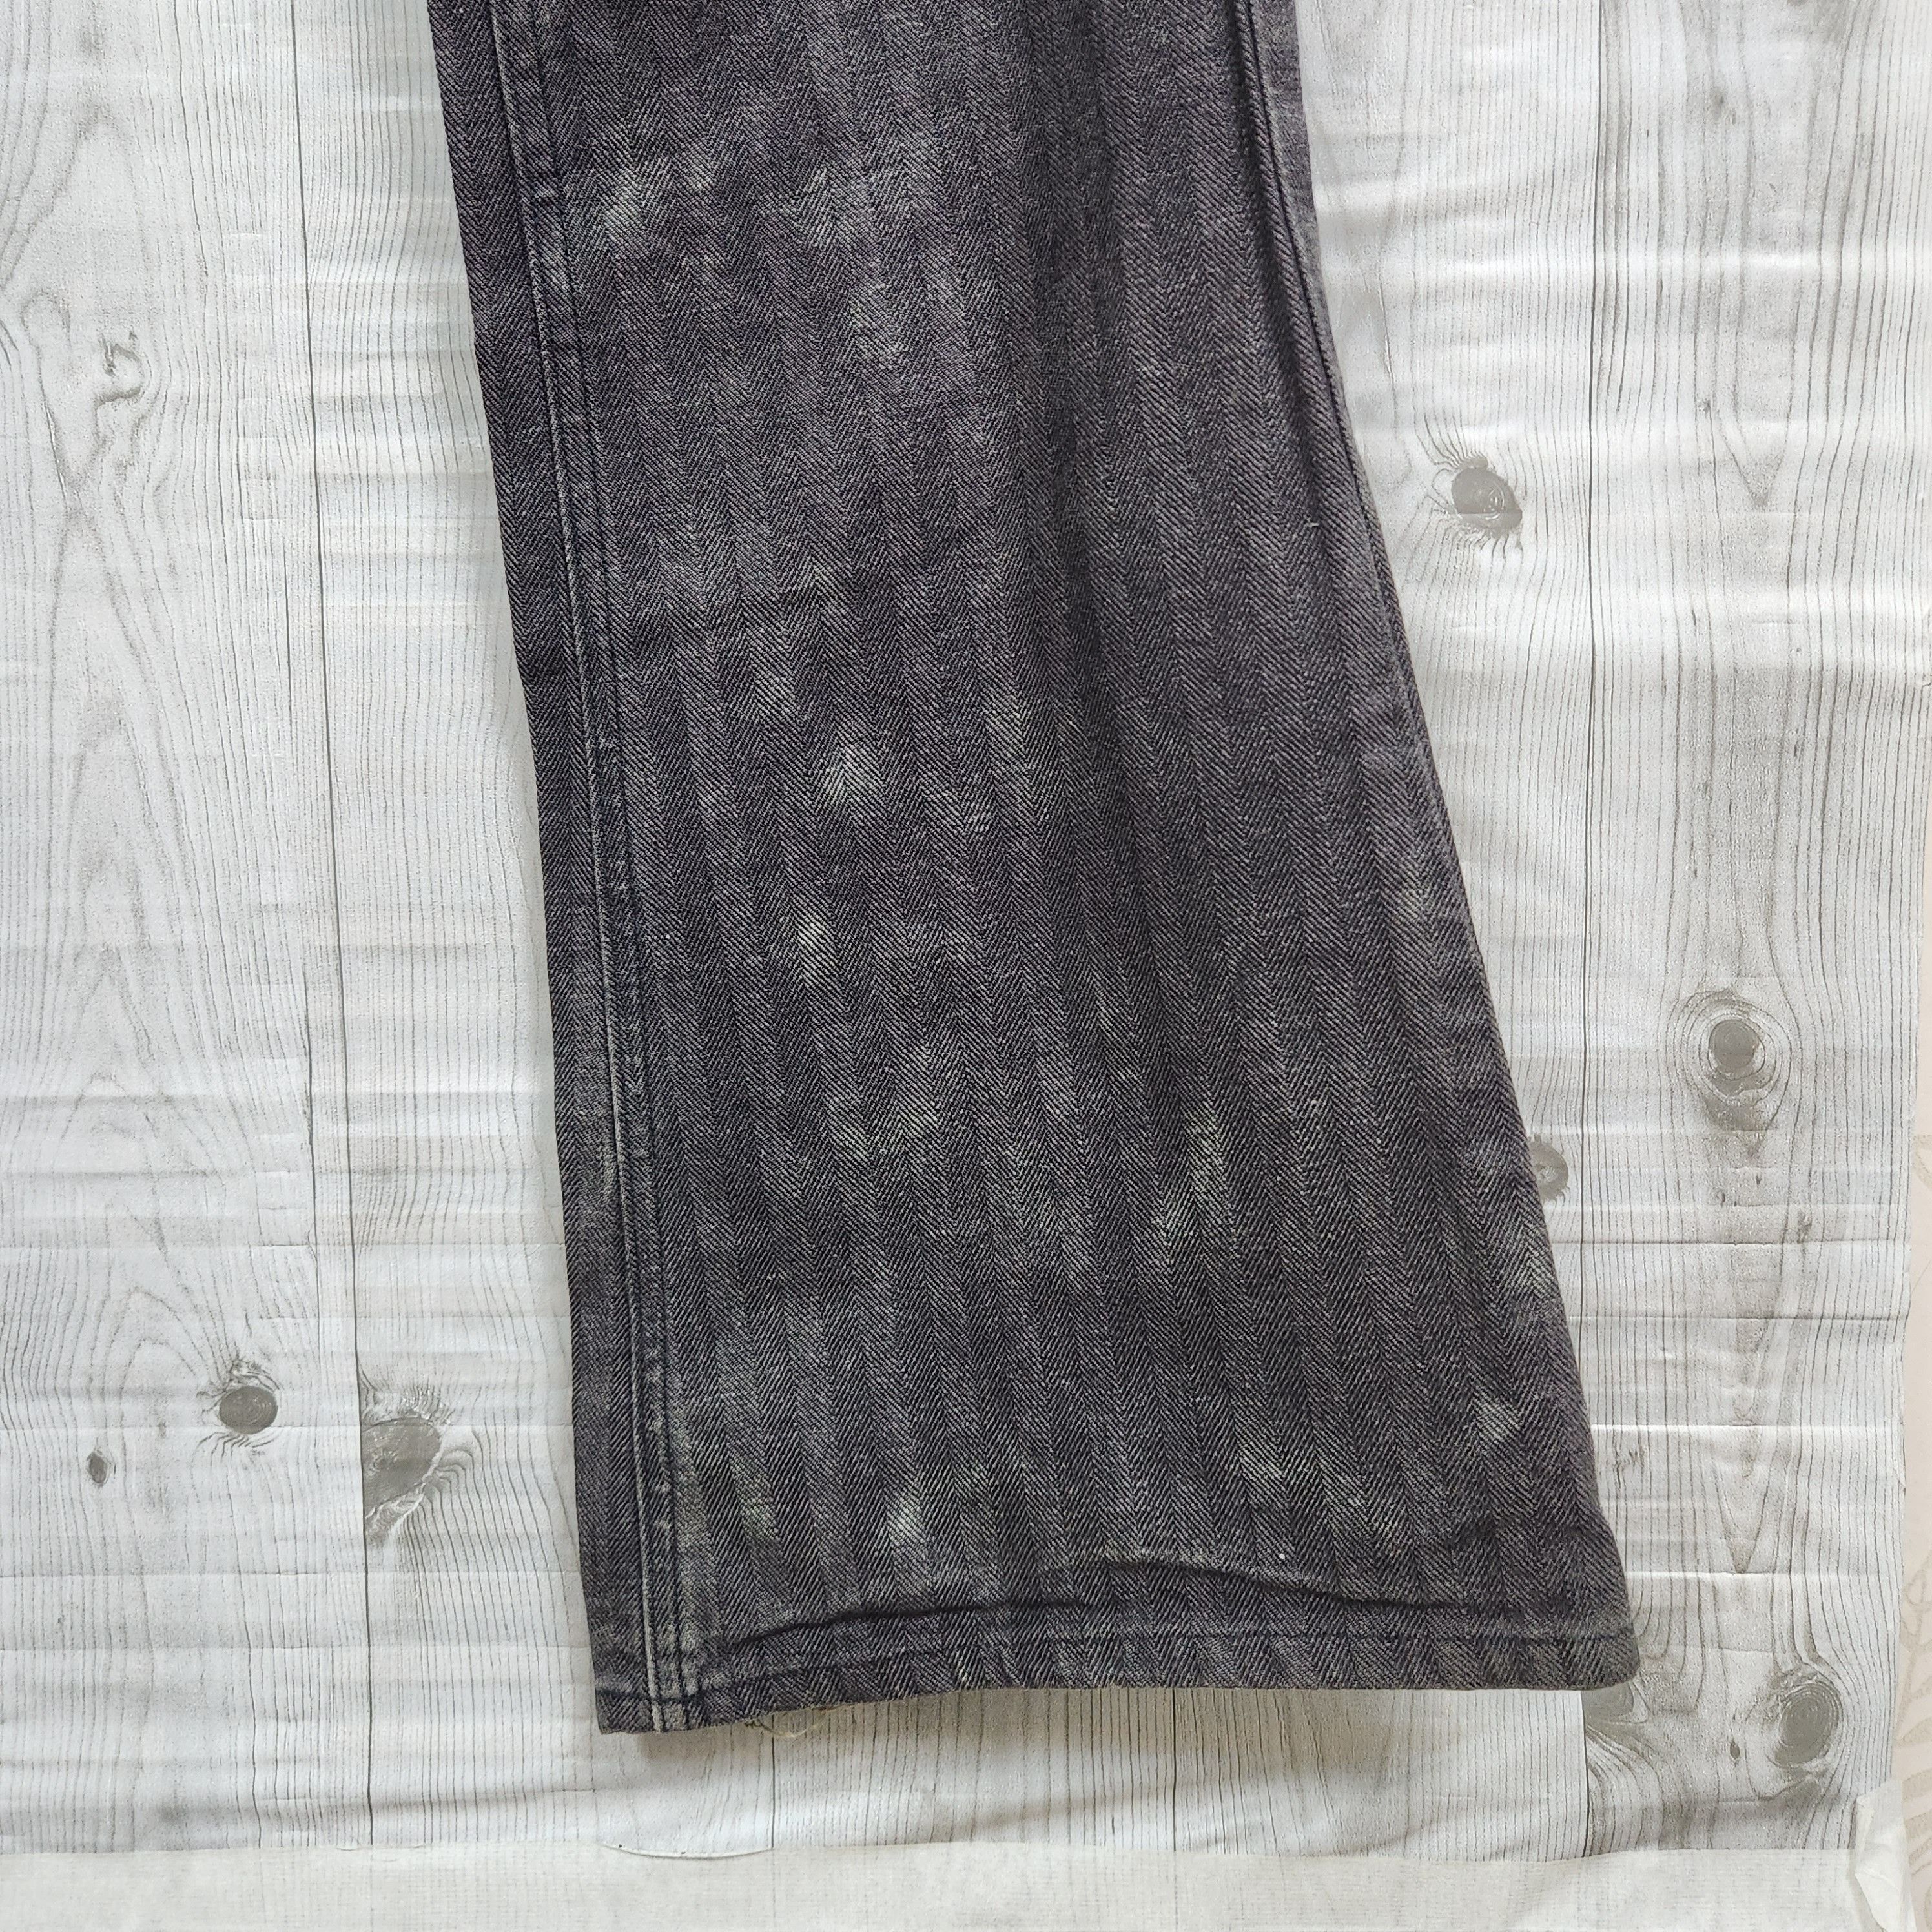 Japanese Brand - Flared Edge Rupert Denim Japan Jeans 70s Style - 8